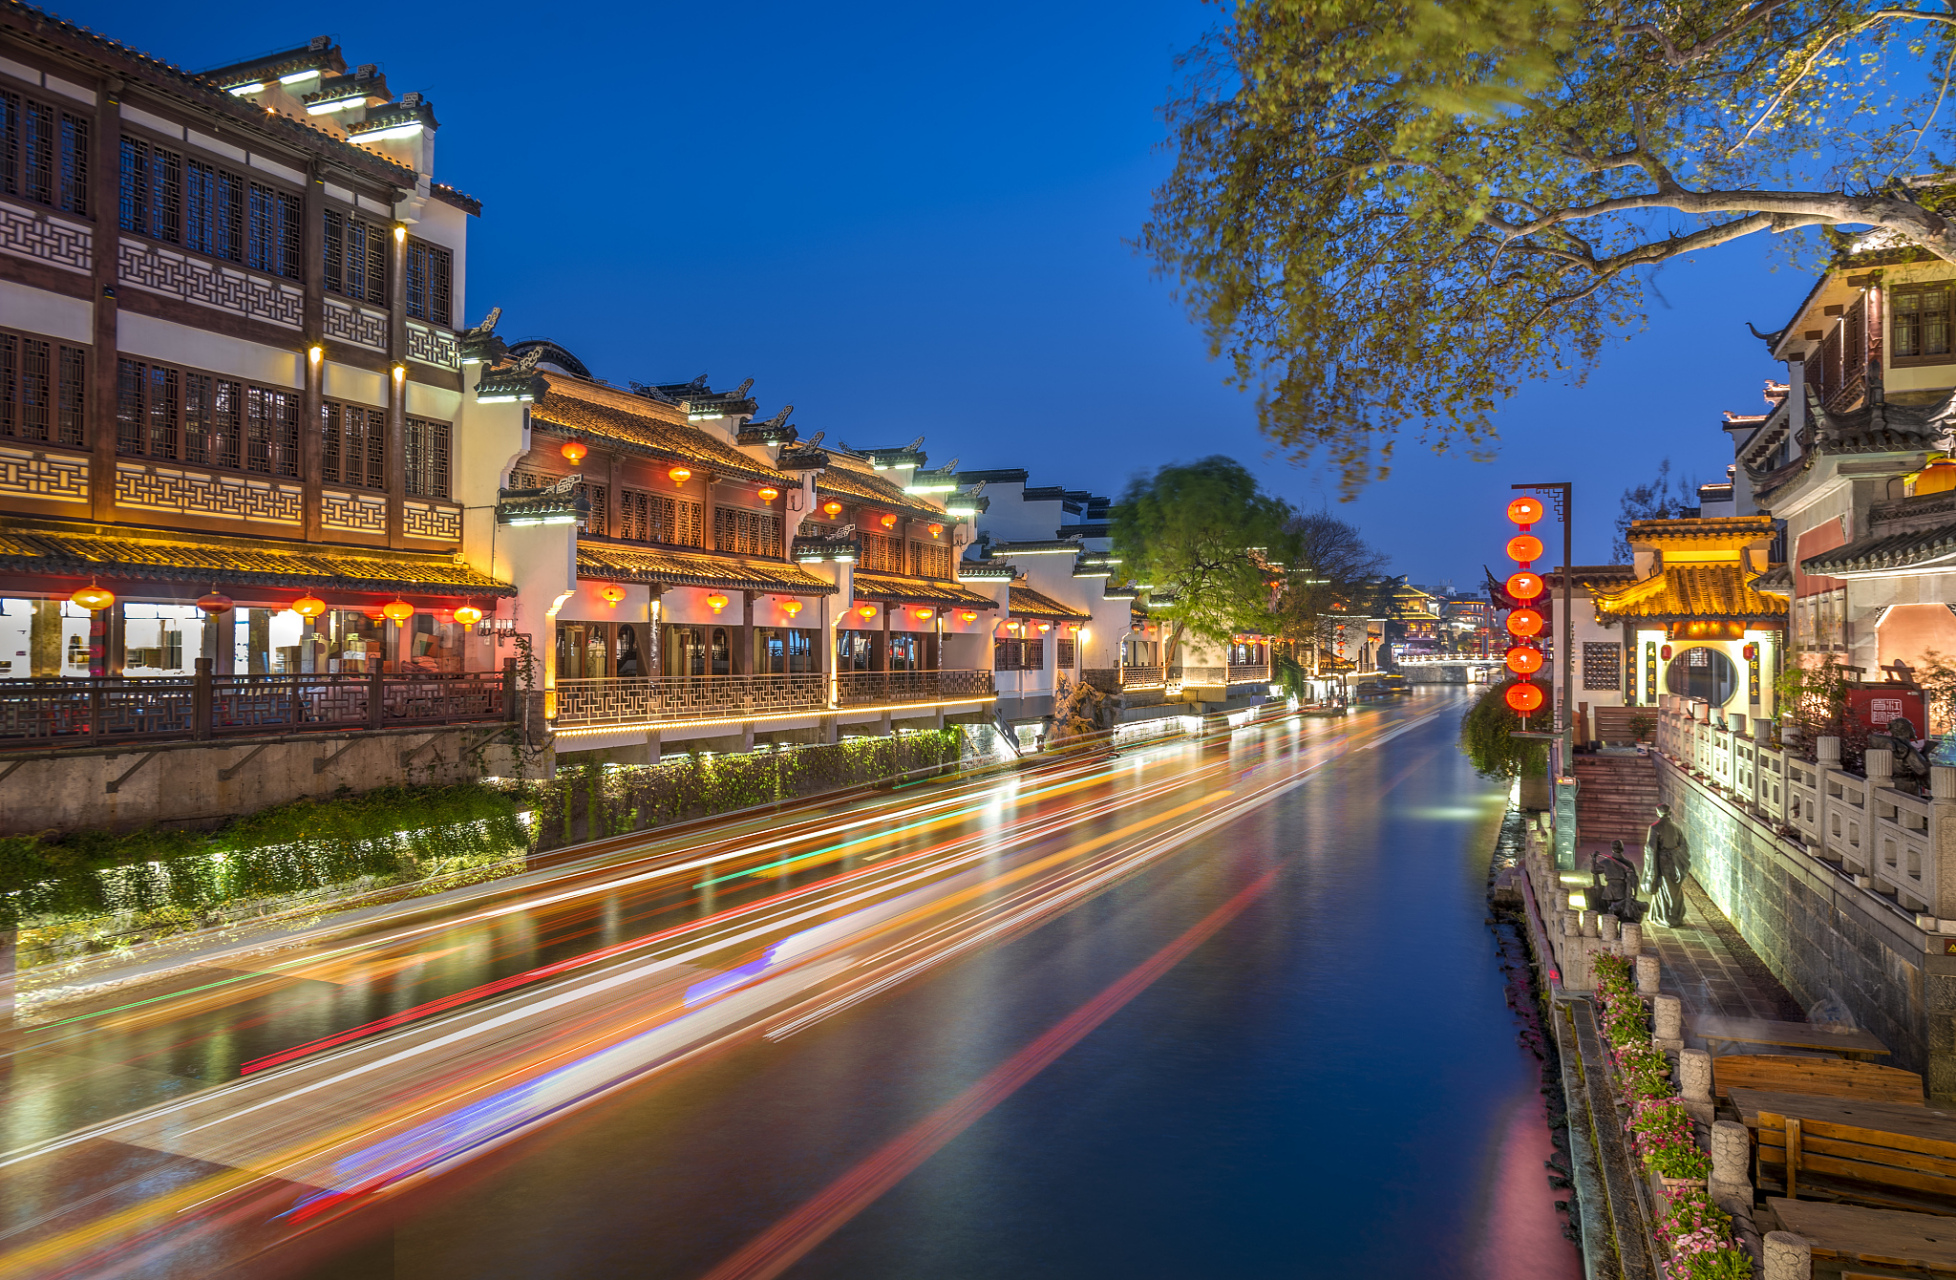 南京夜游必去景点包括:夫子庙秦淮风光带,南京眼步行桥,中山陵音乐台